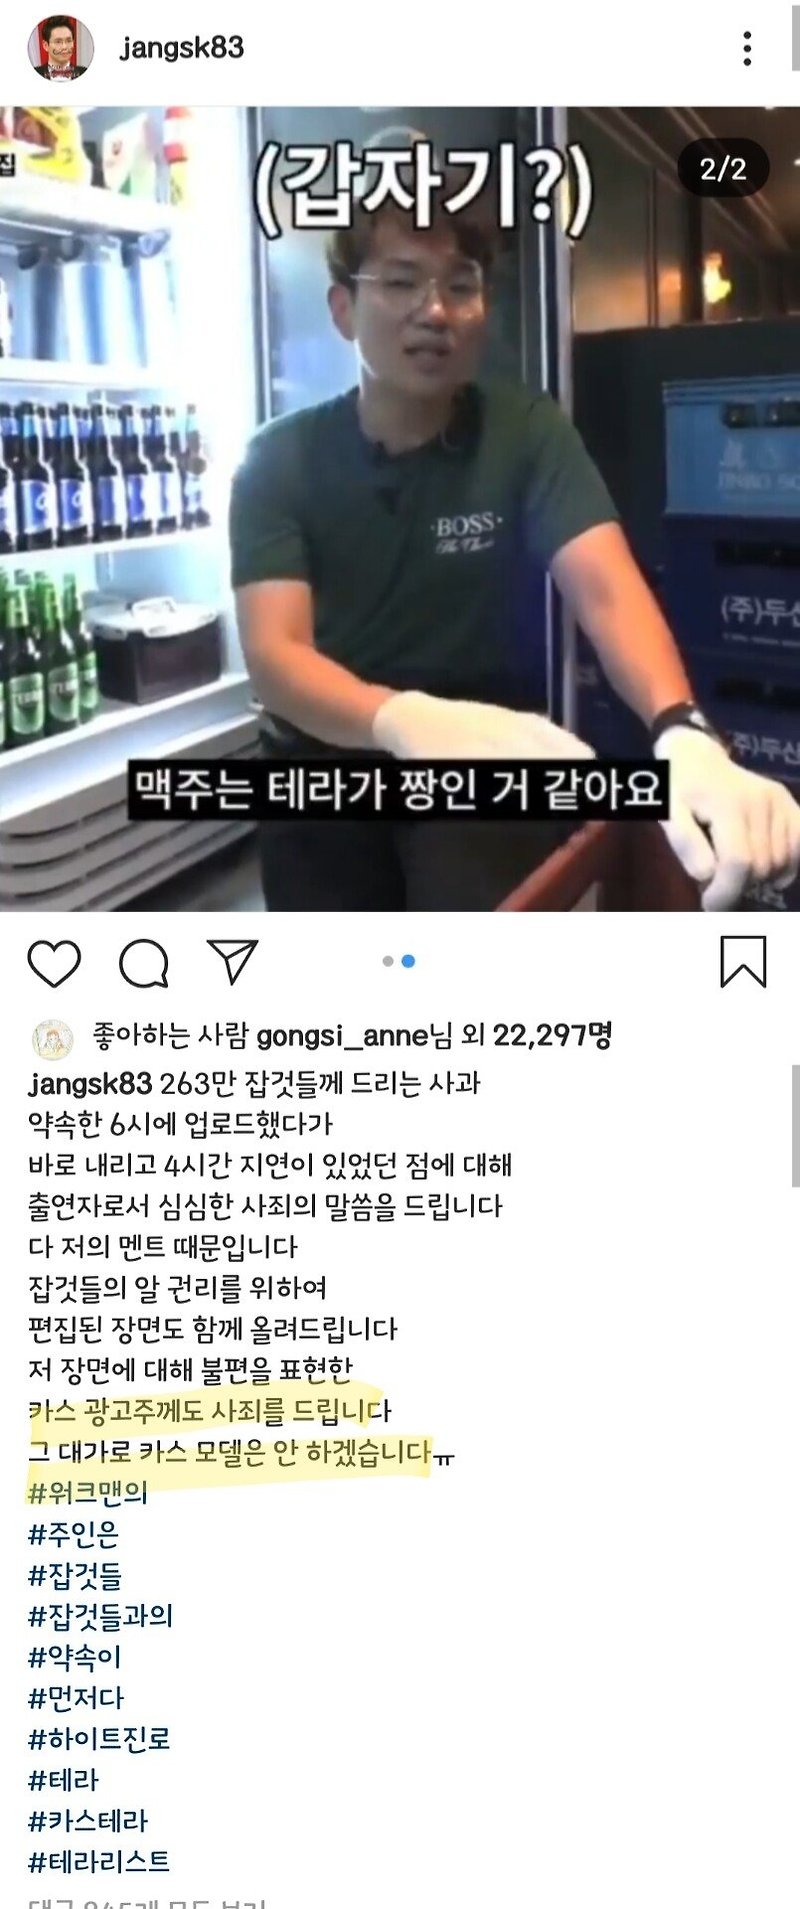 워크맨 장성규 사과문 업로드 카스 광고주